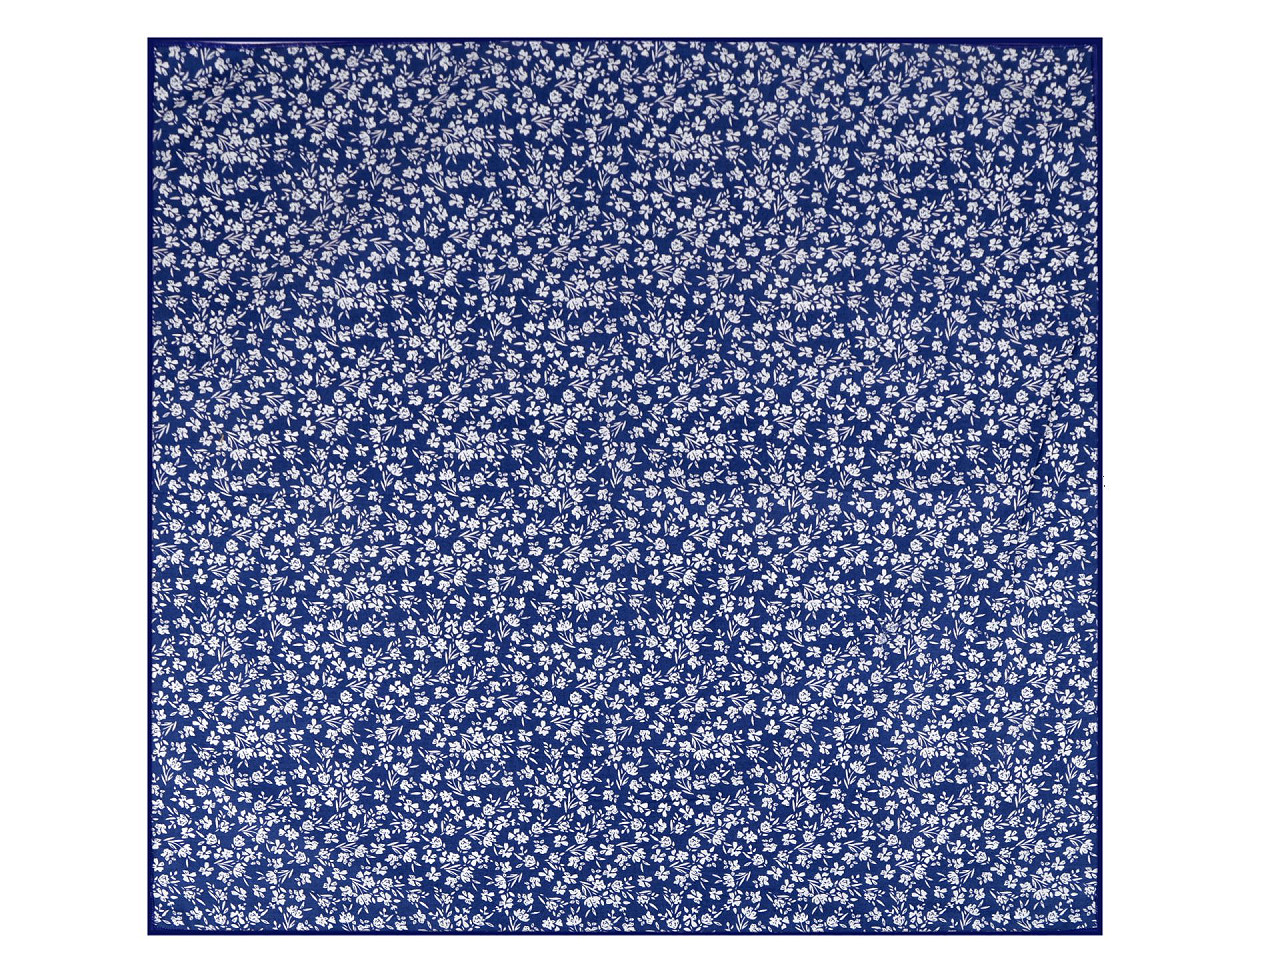 Baumwolltuch mit Blumenmuster 55x55 cm, blau, 1 Stk.